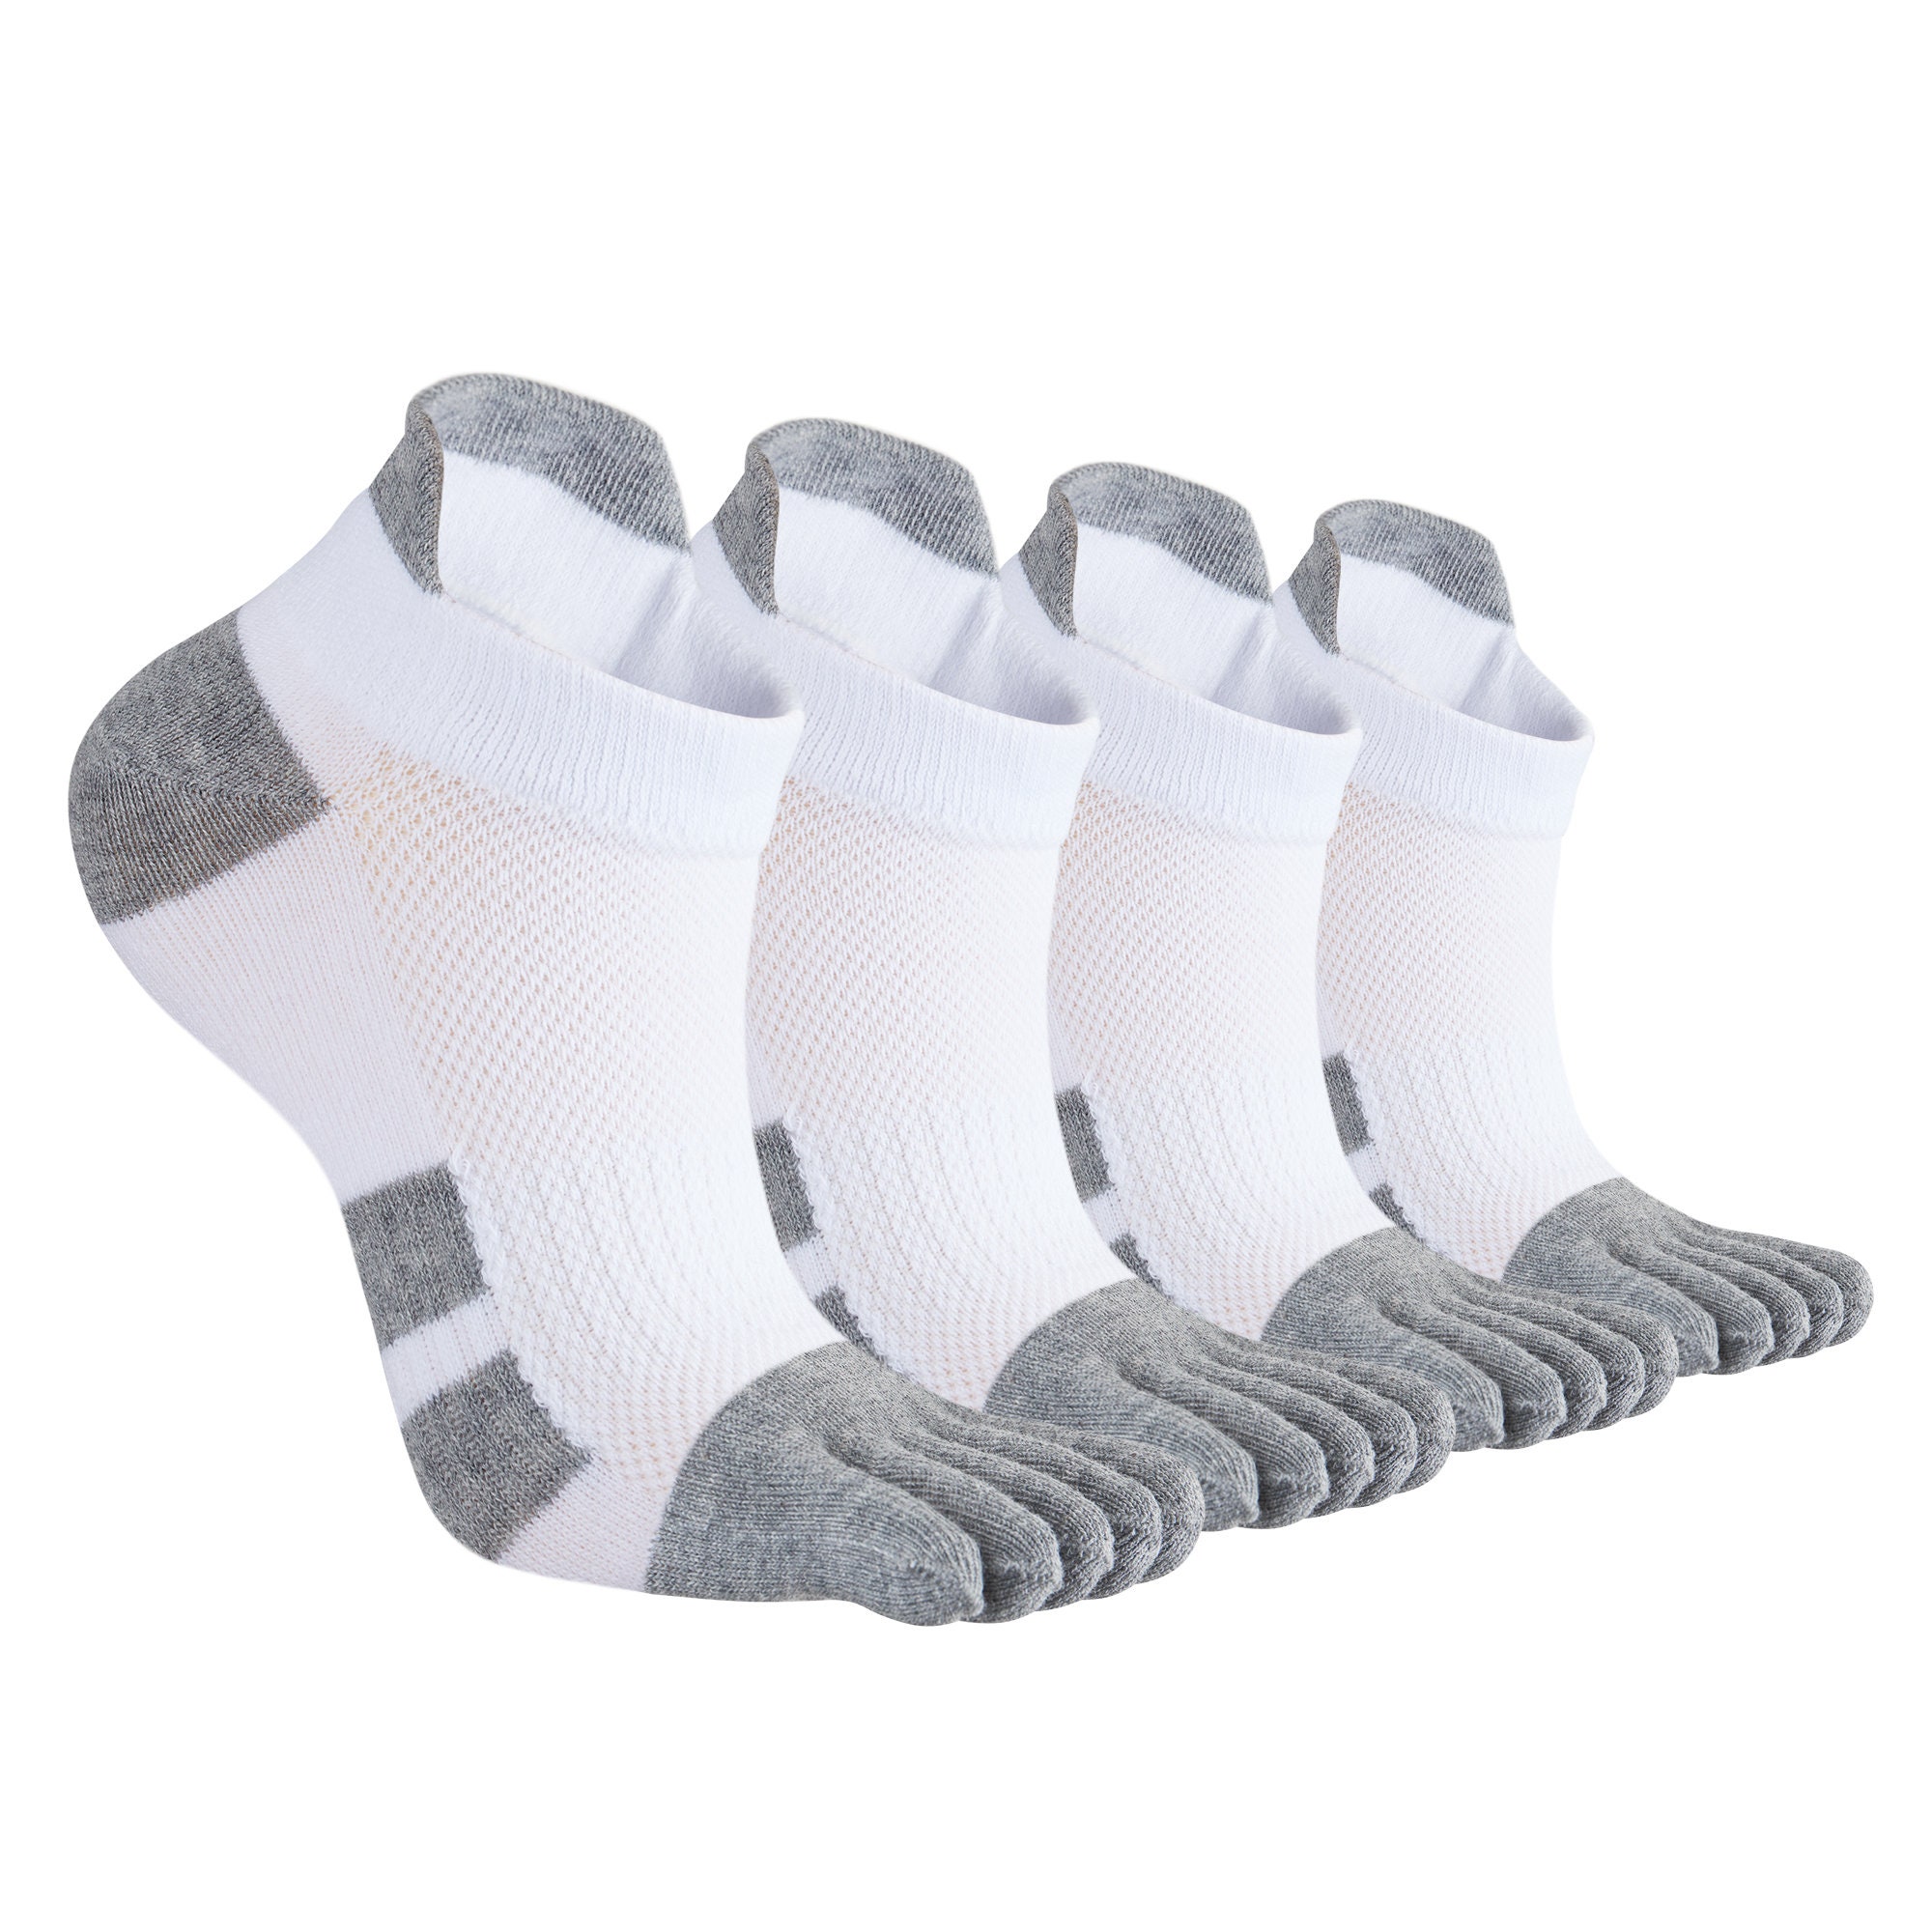 Size 39-44/45-48, 5 Pairs，Men's 5-Finger Socks Cotton Split Toe Socks Fancy  Running Toe Sock Sport Five Finger Sock, 